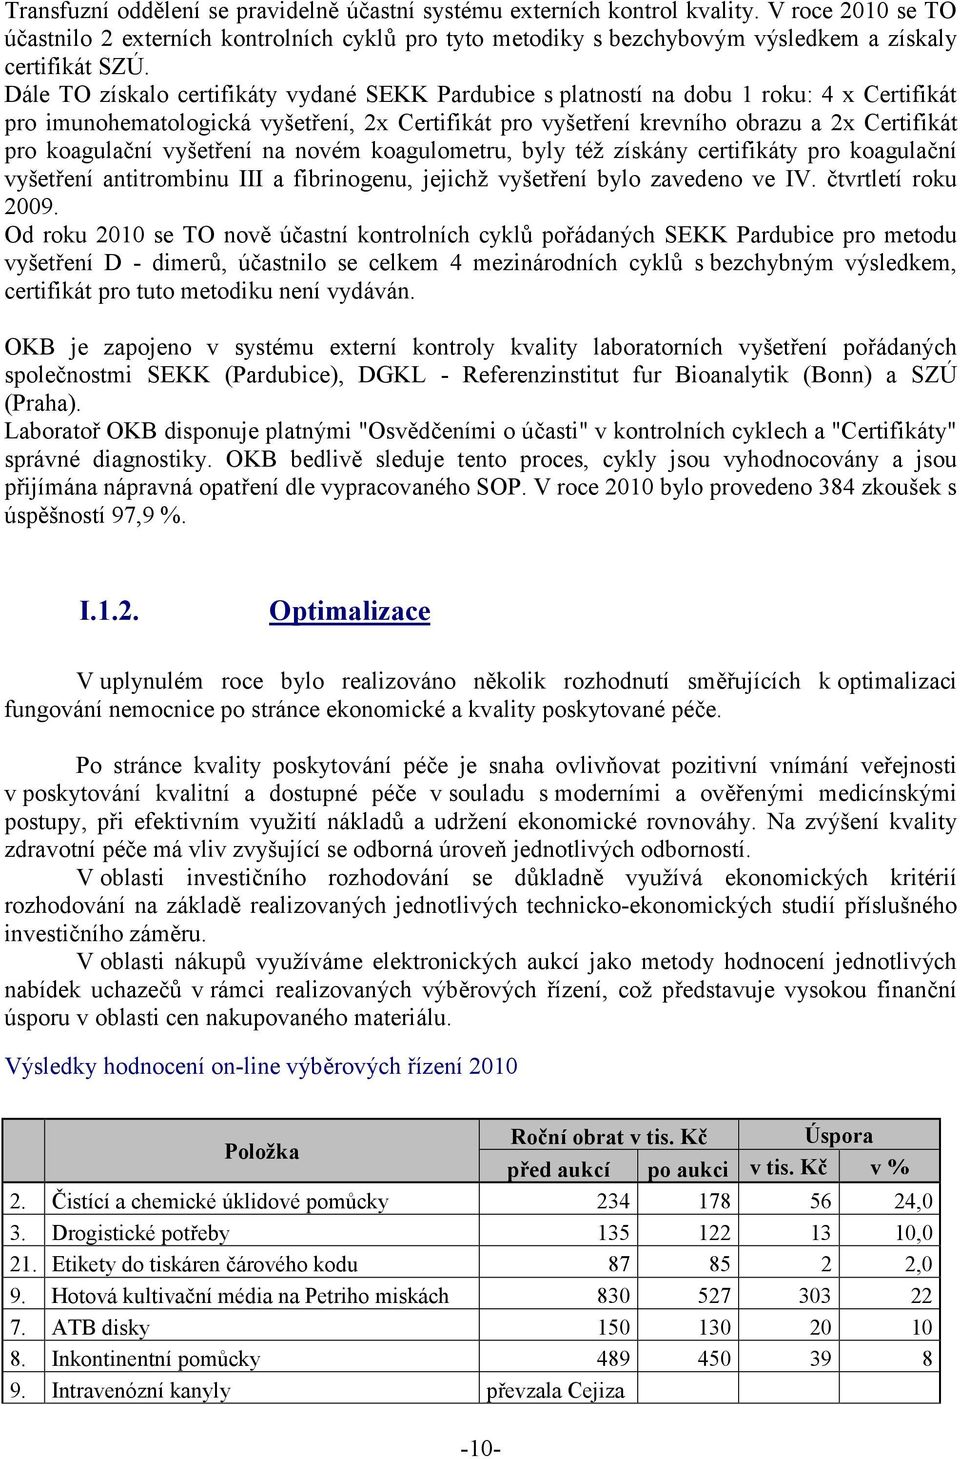 Dále TO získalo certifikáty vydané SEKK Pardubice s platností na dobu 1 roku: 4 x Certifikát pro imunohematologická vyšetření, 2x Certifikát pro vyšetření krevního obrazu a 2x Certifikát pro